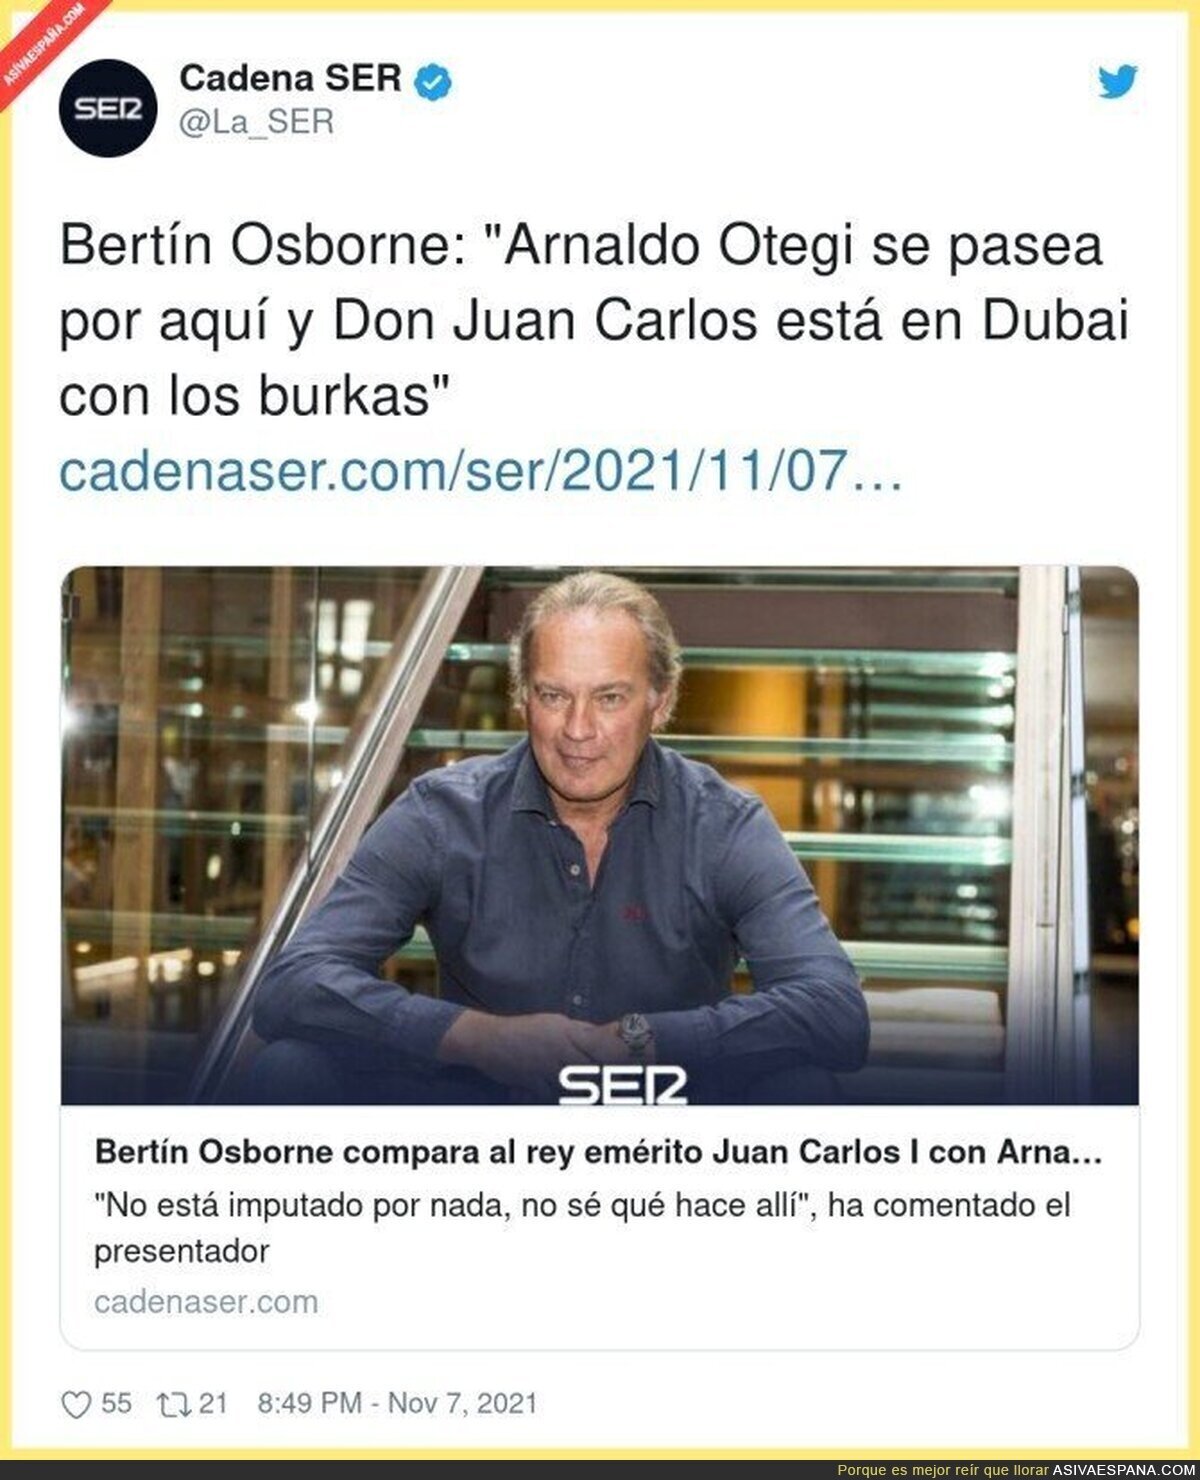 Pobre Don Juan Carlos con los burkas jaja